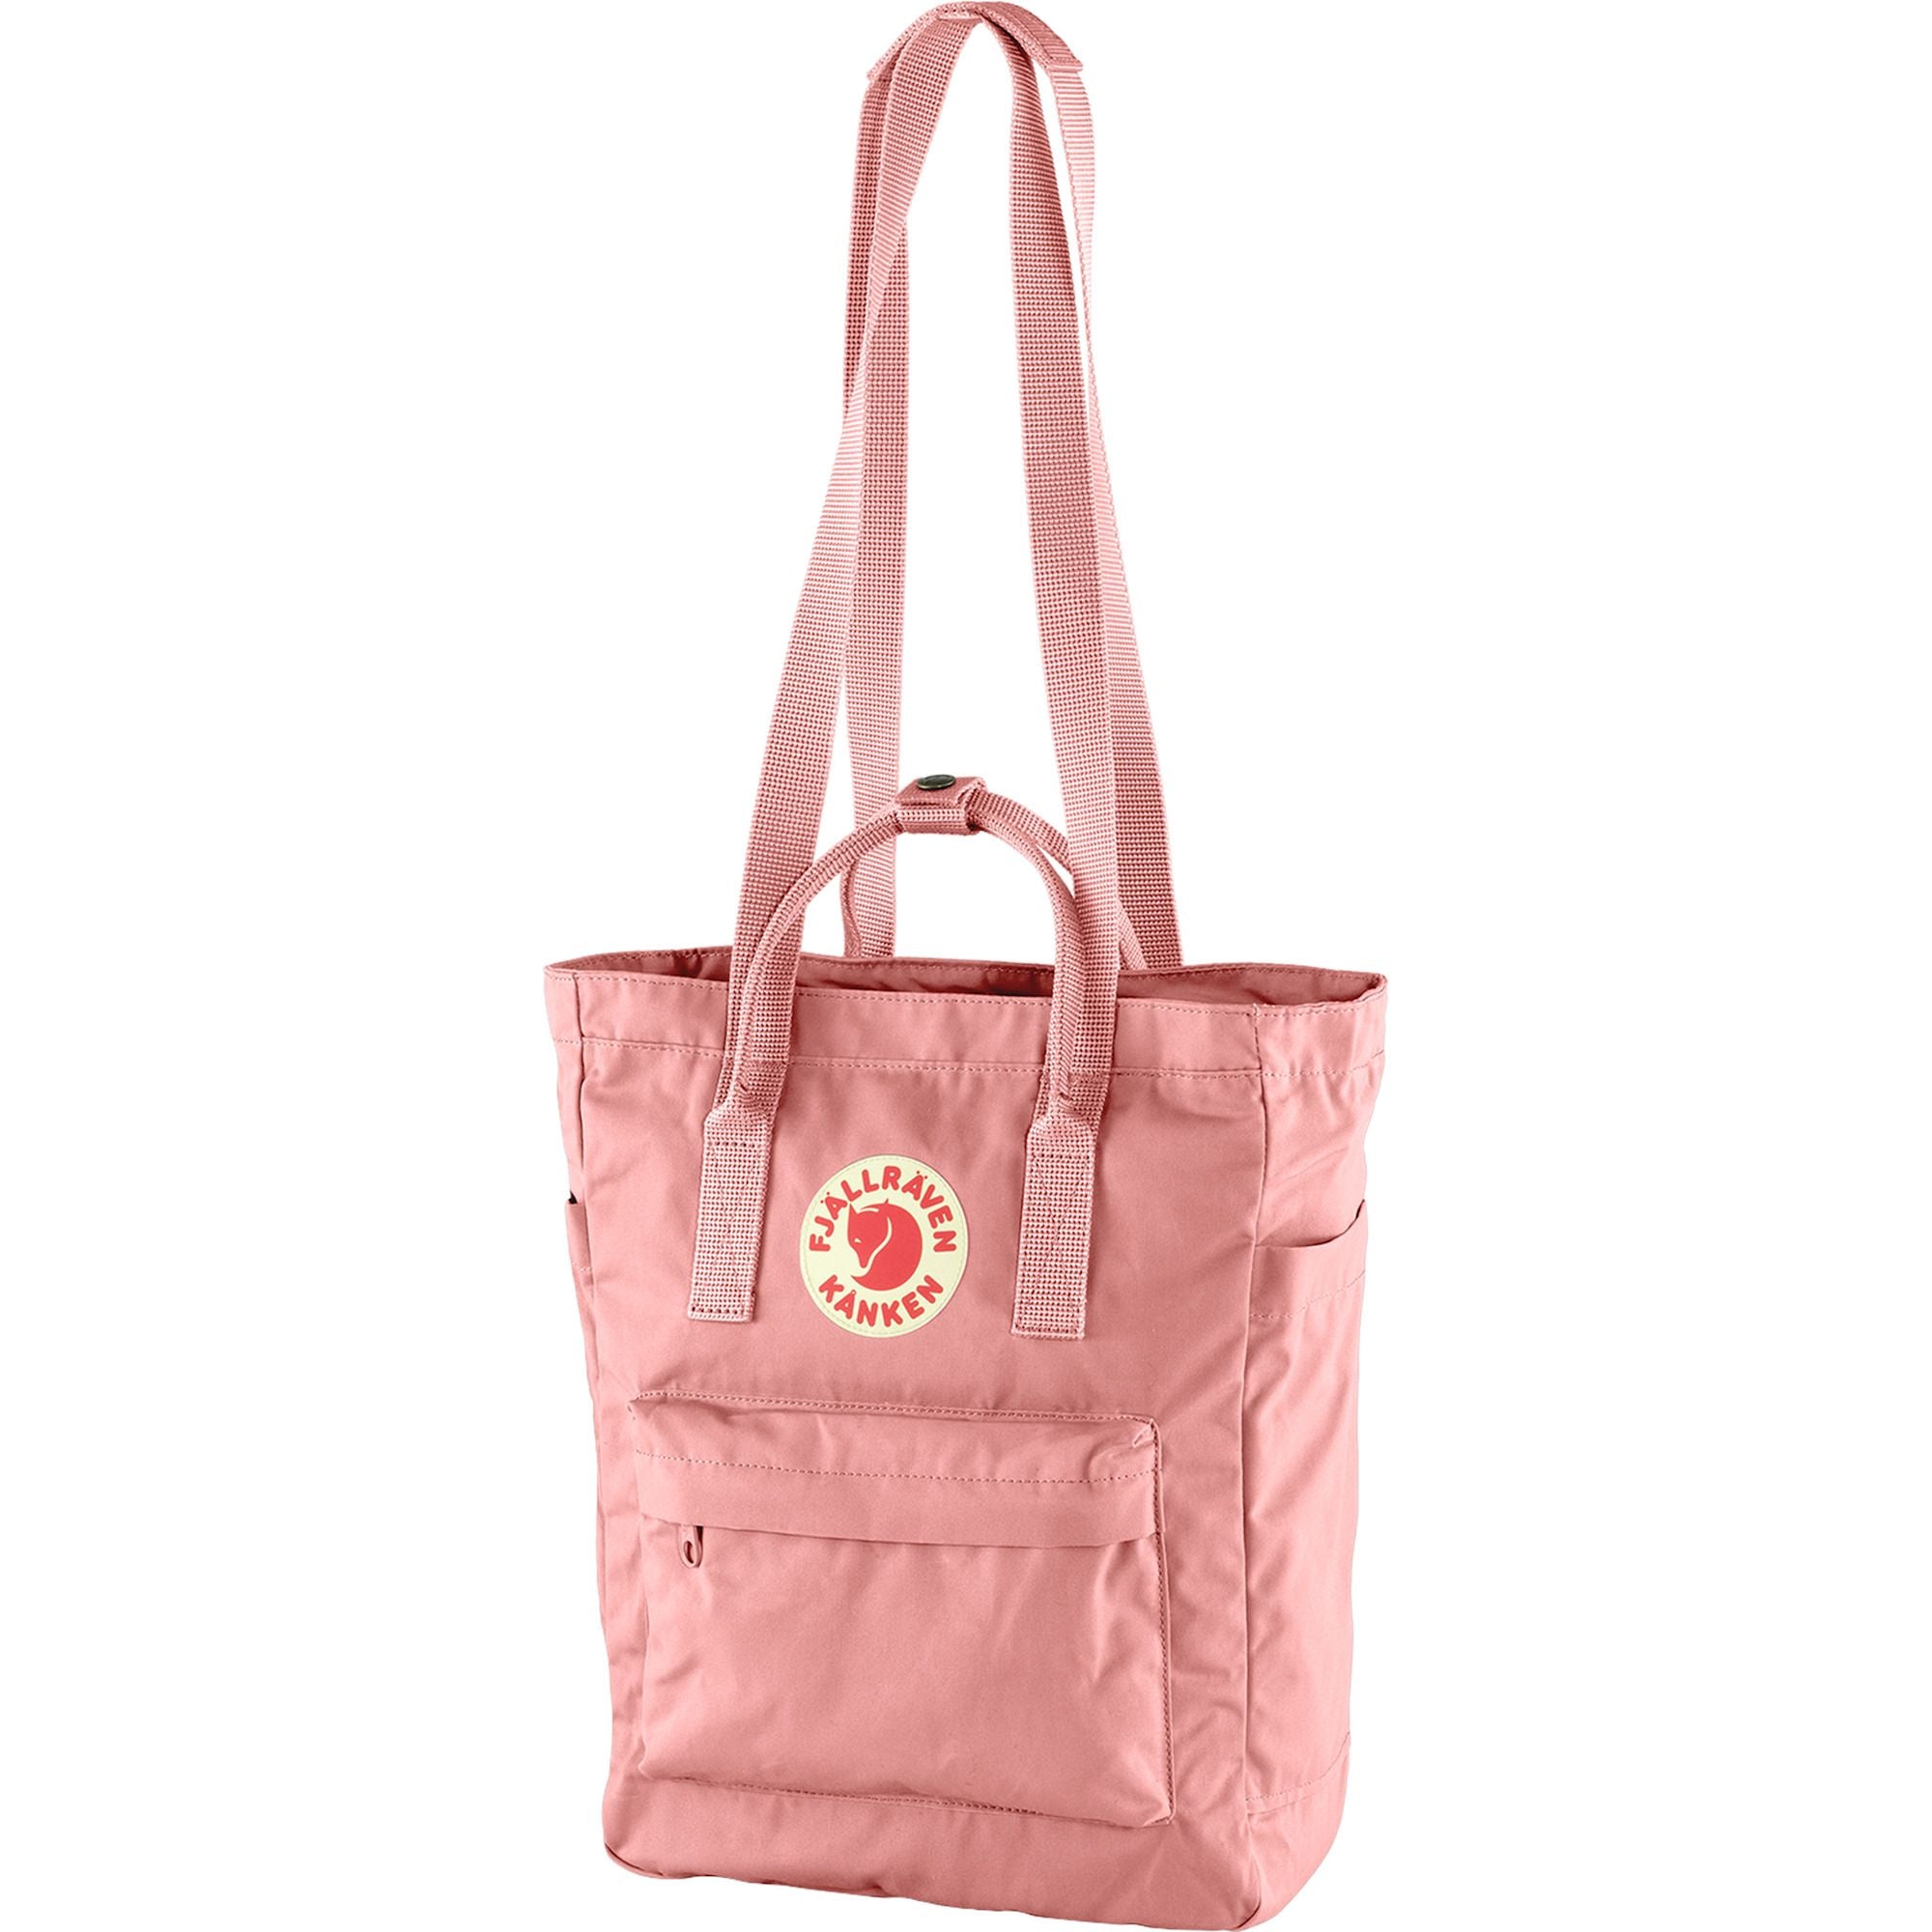 Kanken Topepack Backpack Pink 